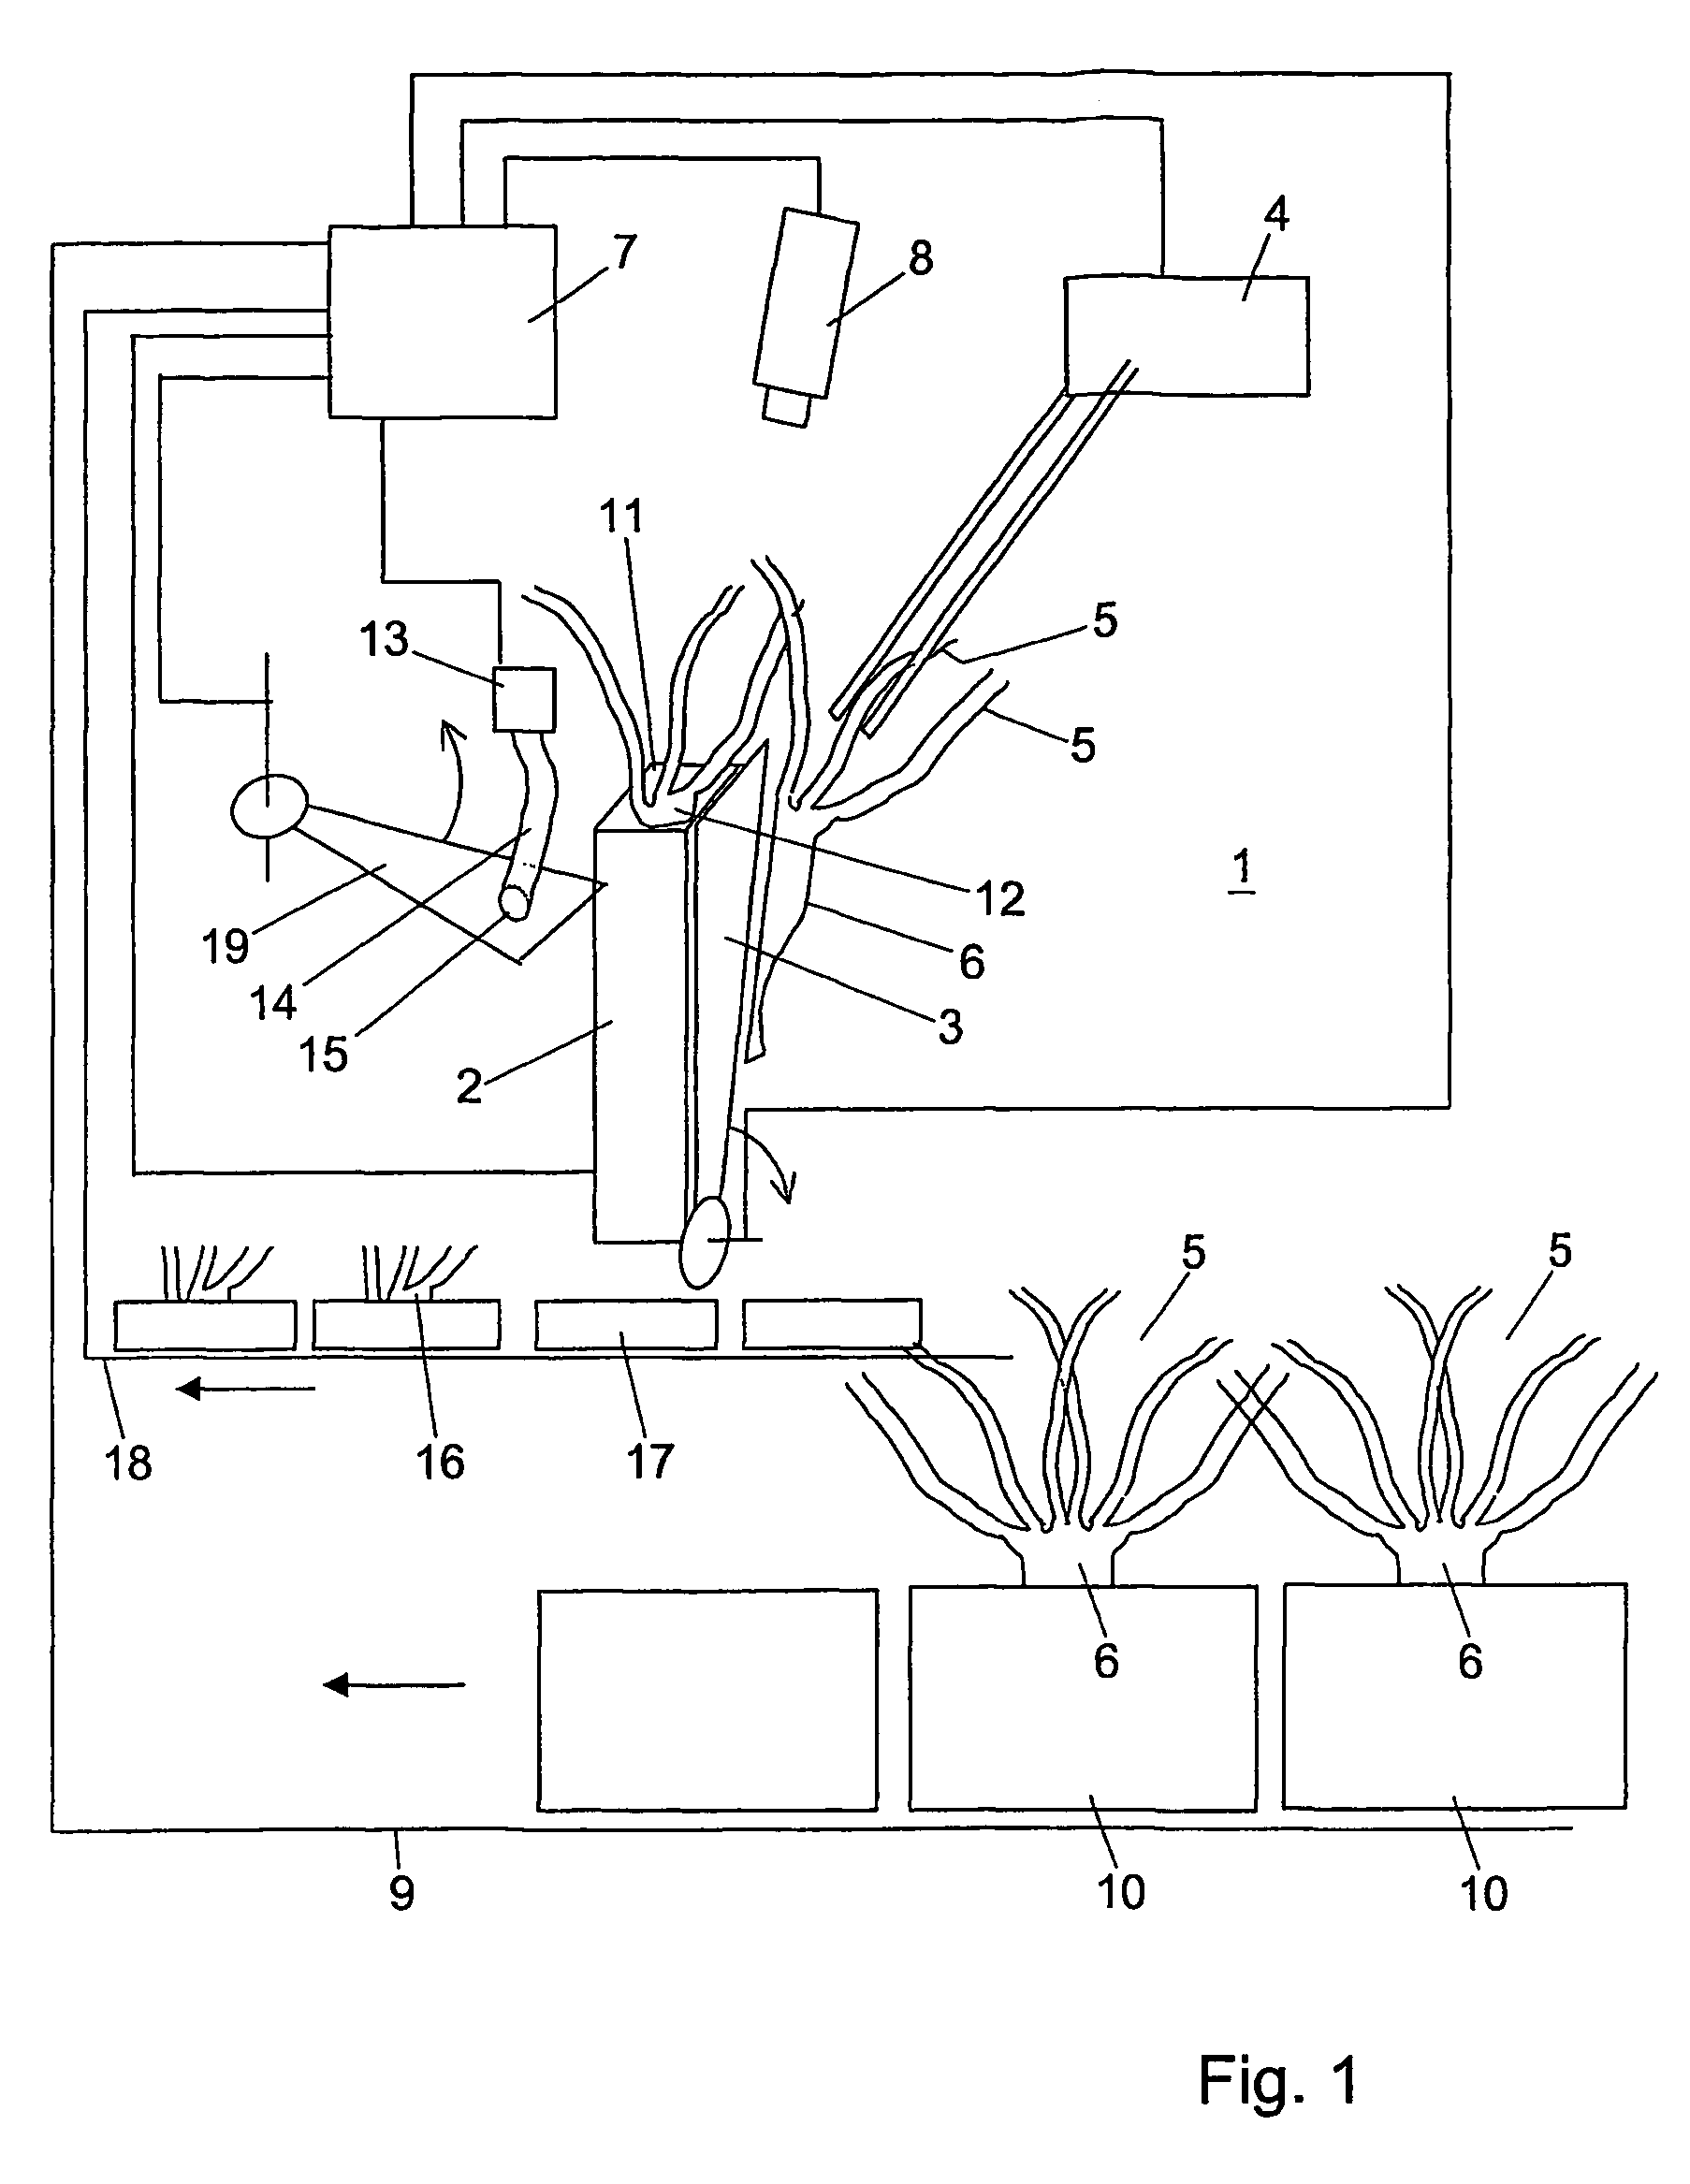 Method for separating rosette plants